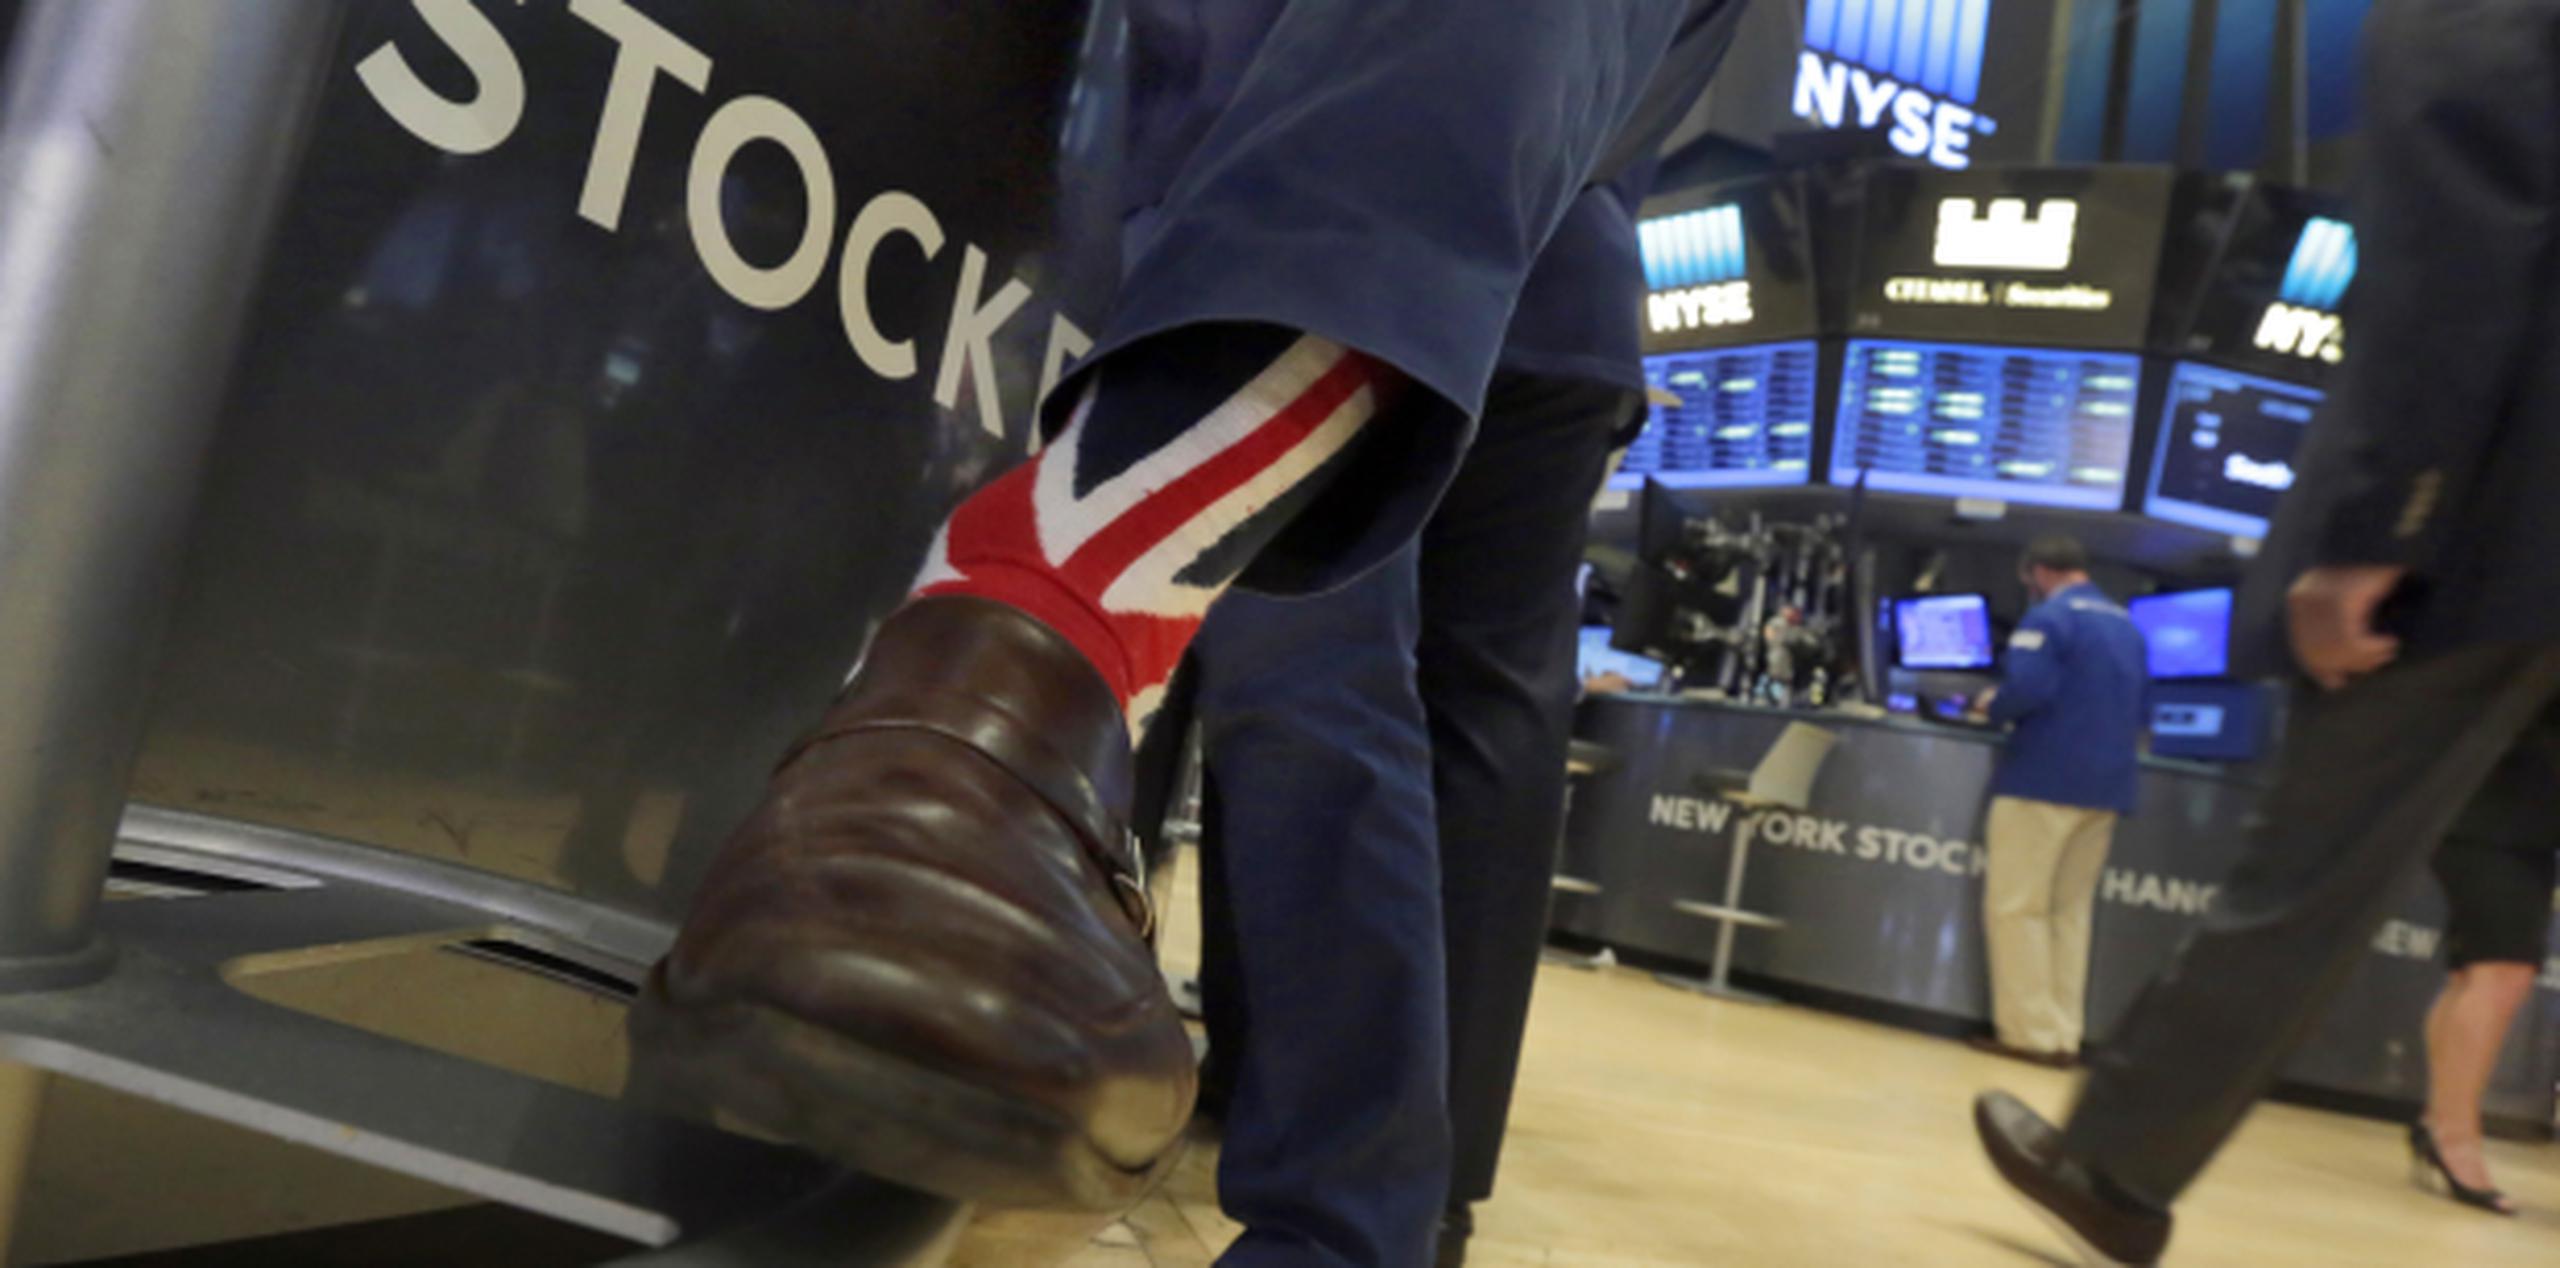 Economista advirtió que uno de los "efectos inmediatos" producto de la salida del Reino Unido de la UE será el aumento de la "volatilidad de los mercados financieros". (AP)